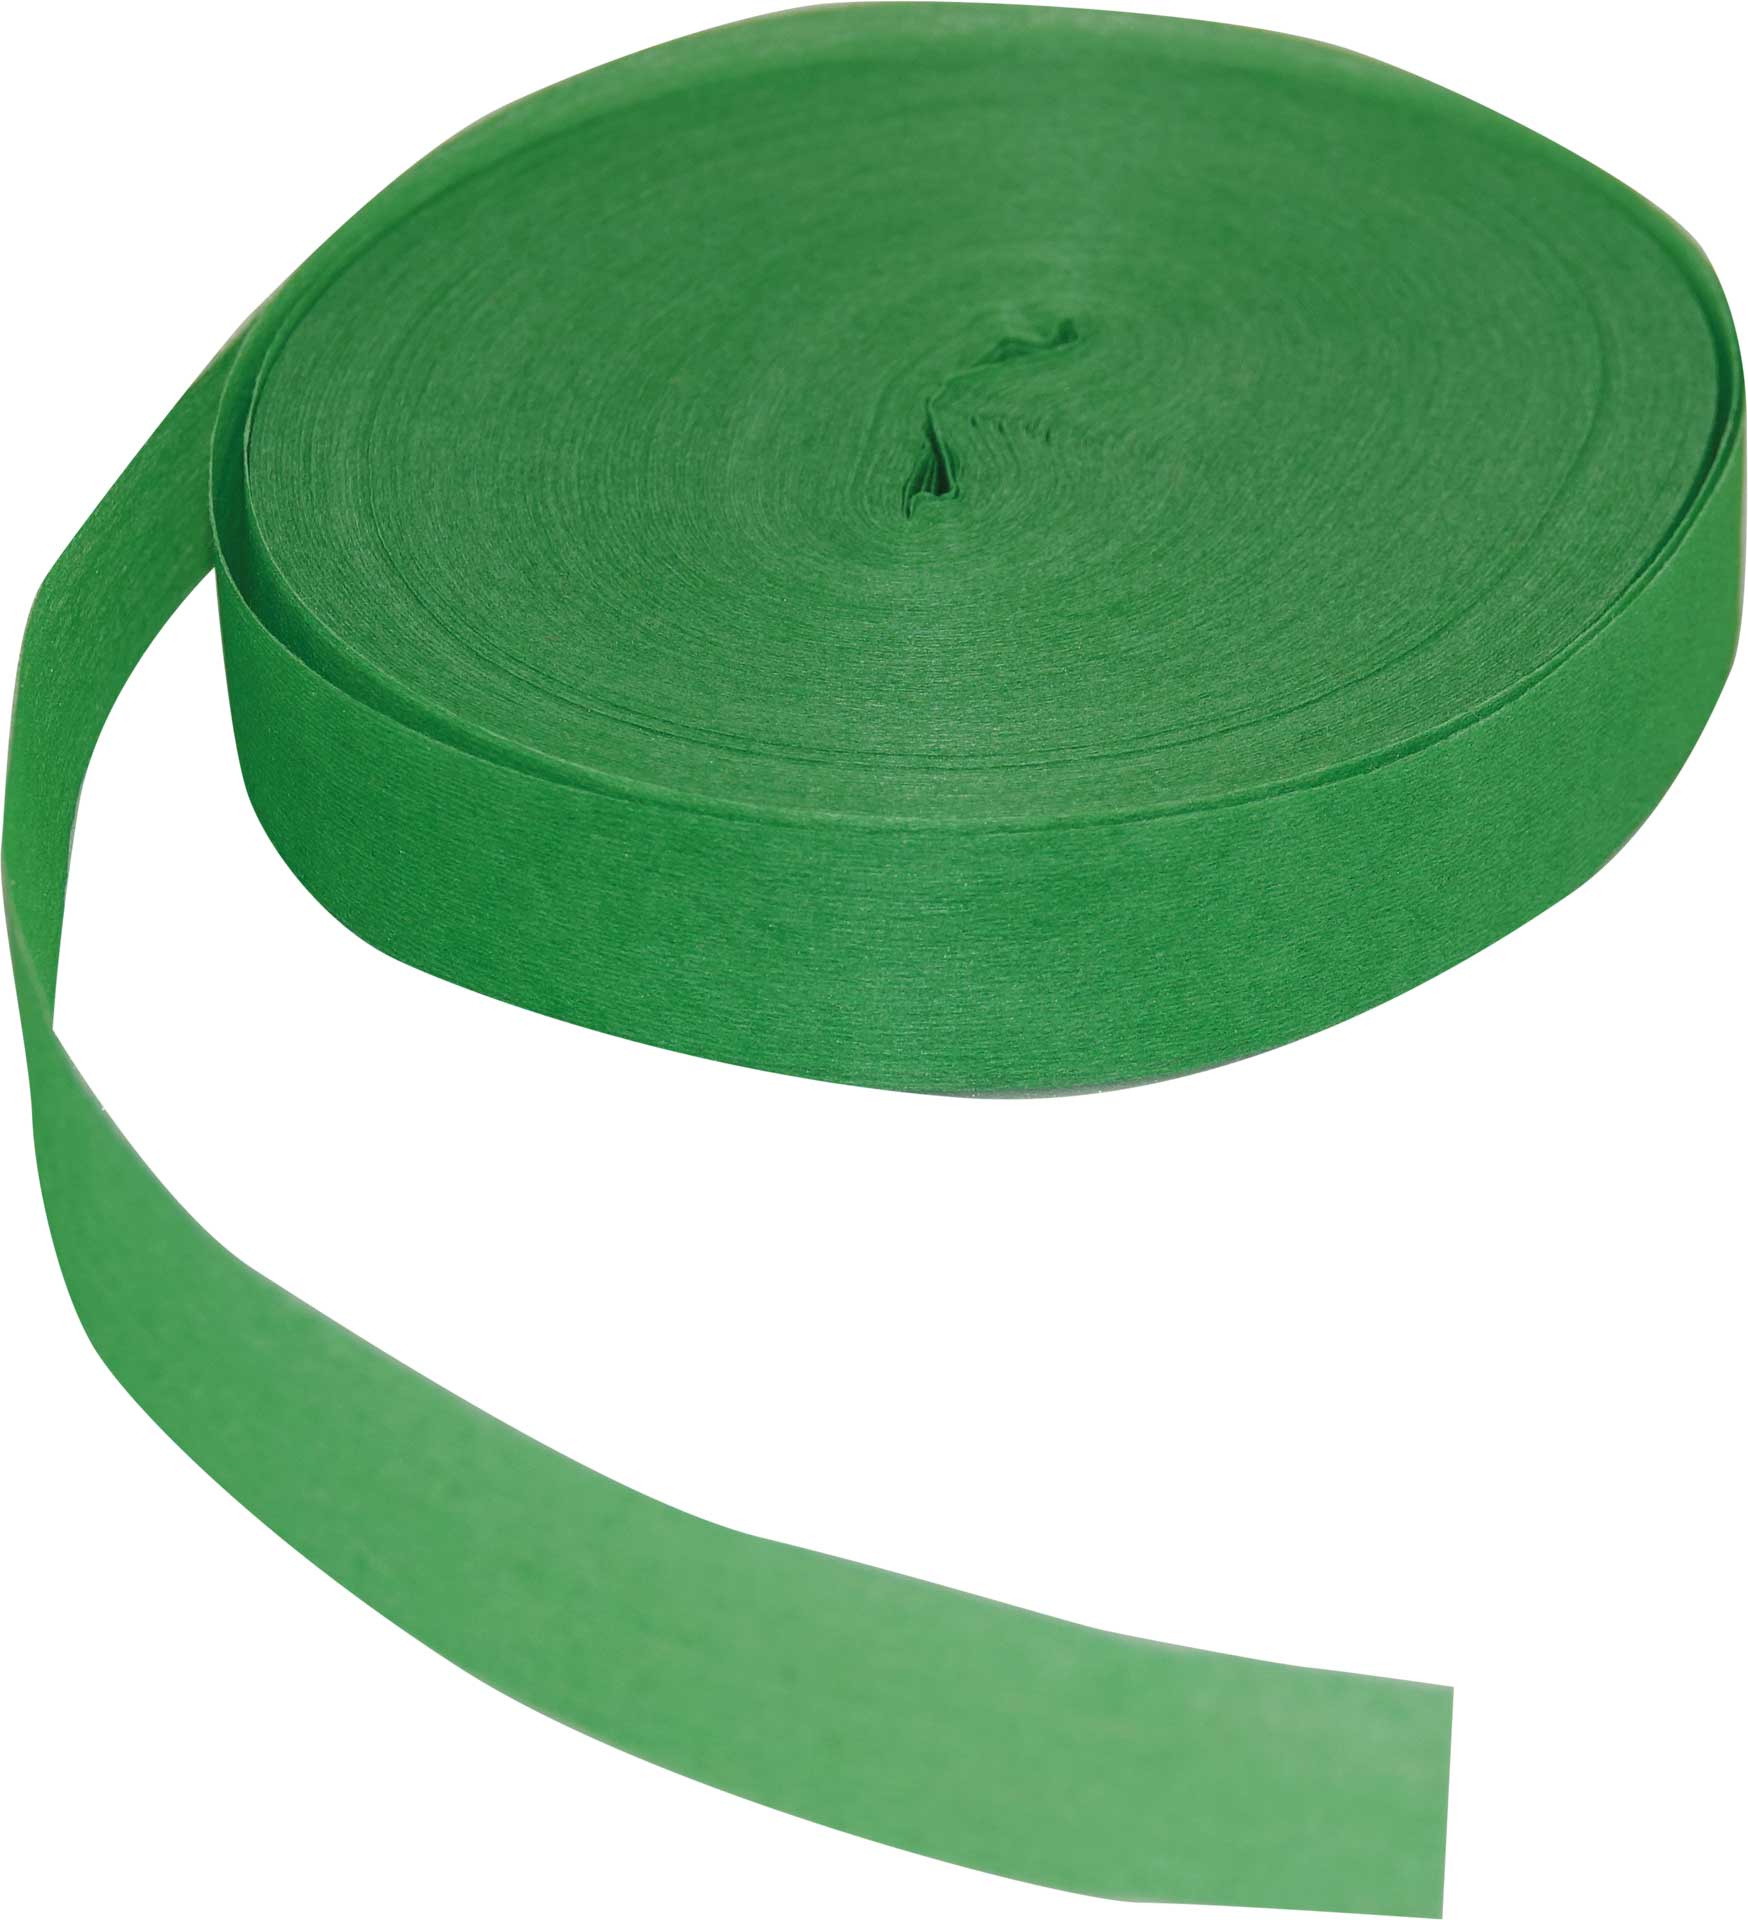 Robbe Modellsport Farbbänder für Wingo 2 in den Farben grün ca. 75m